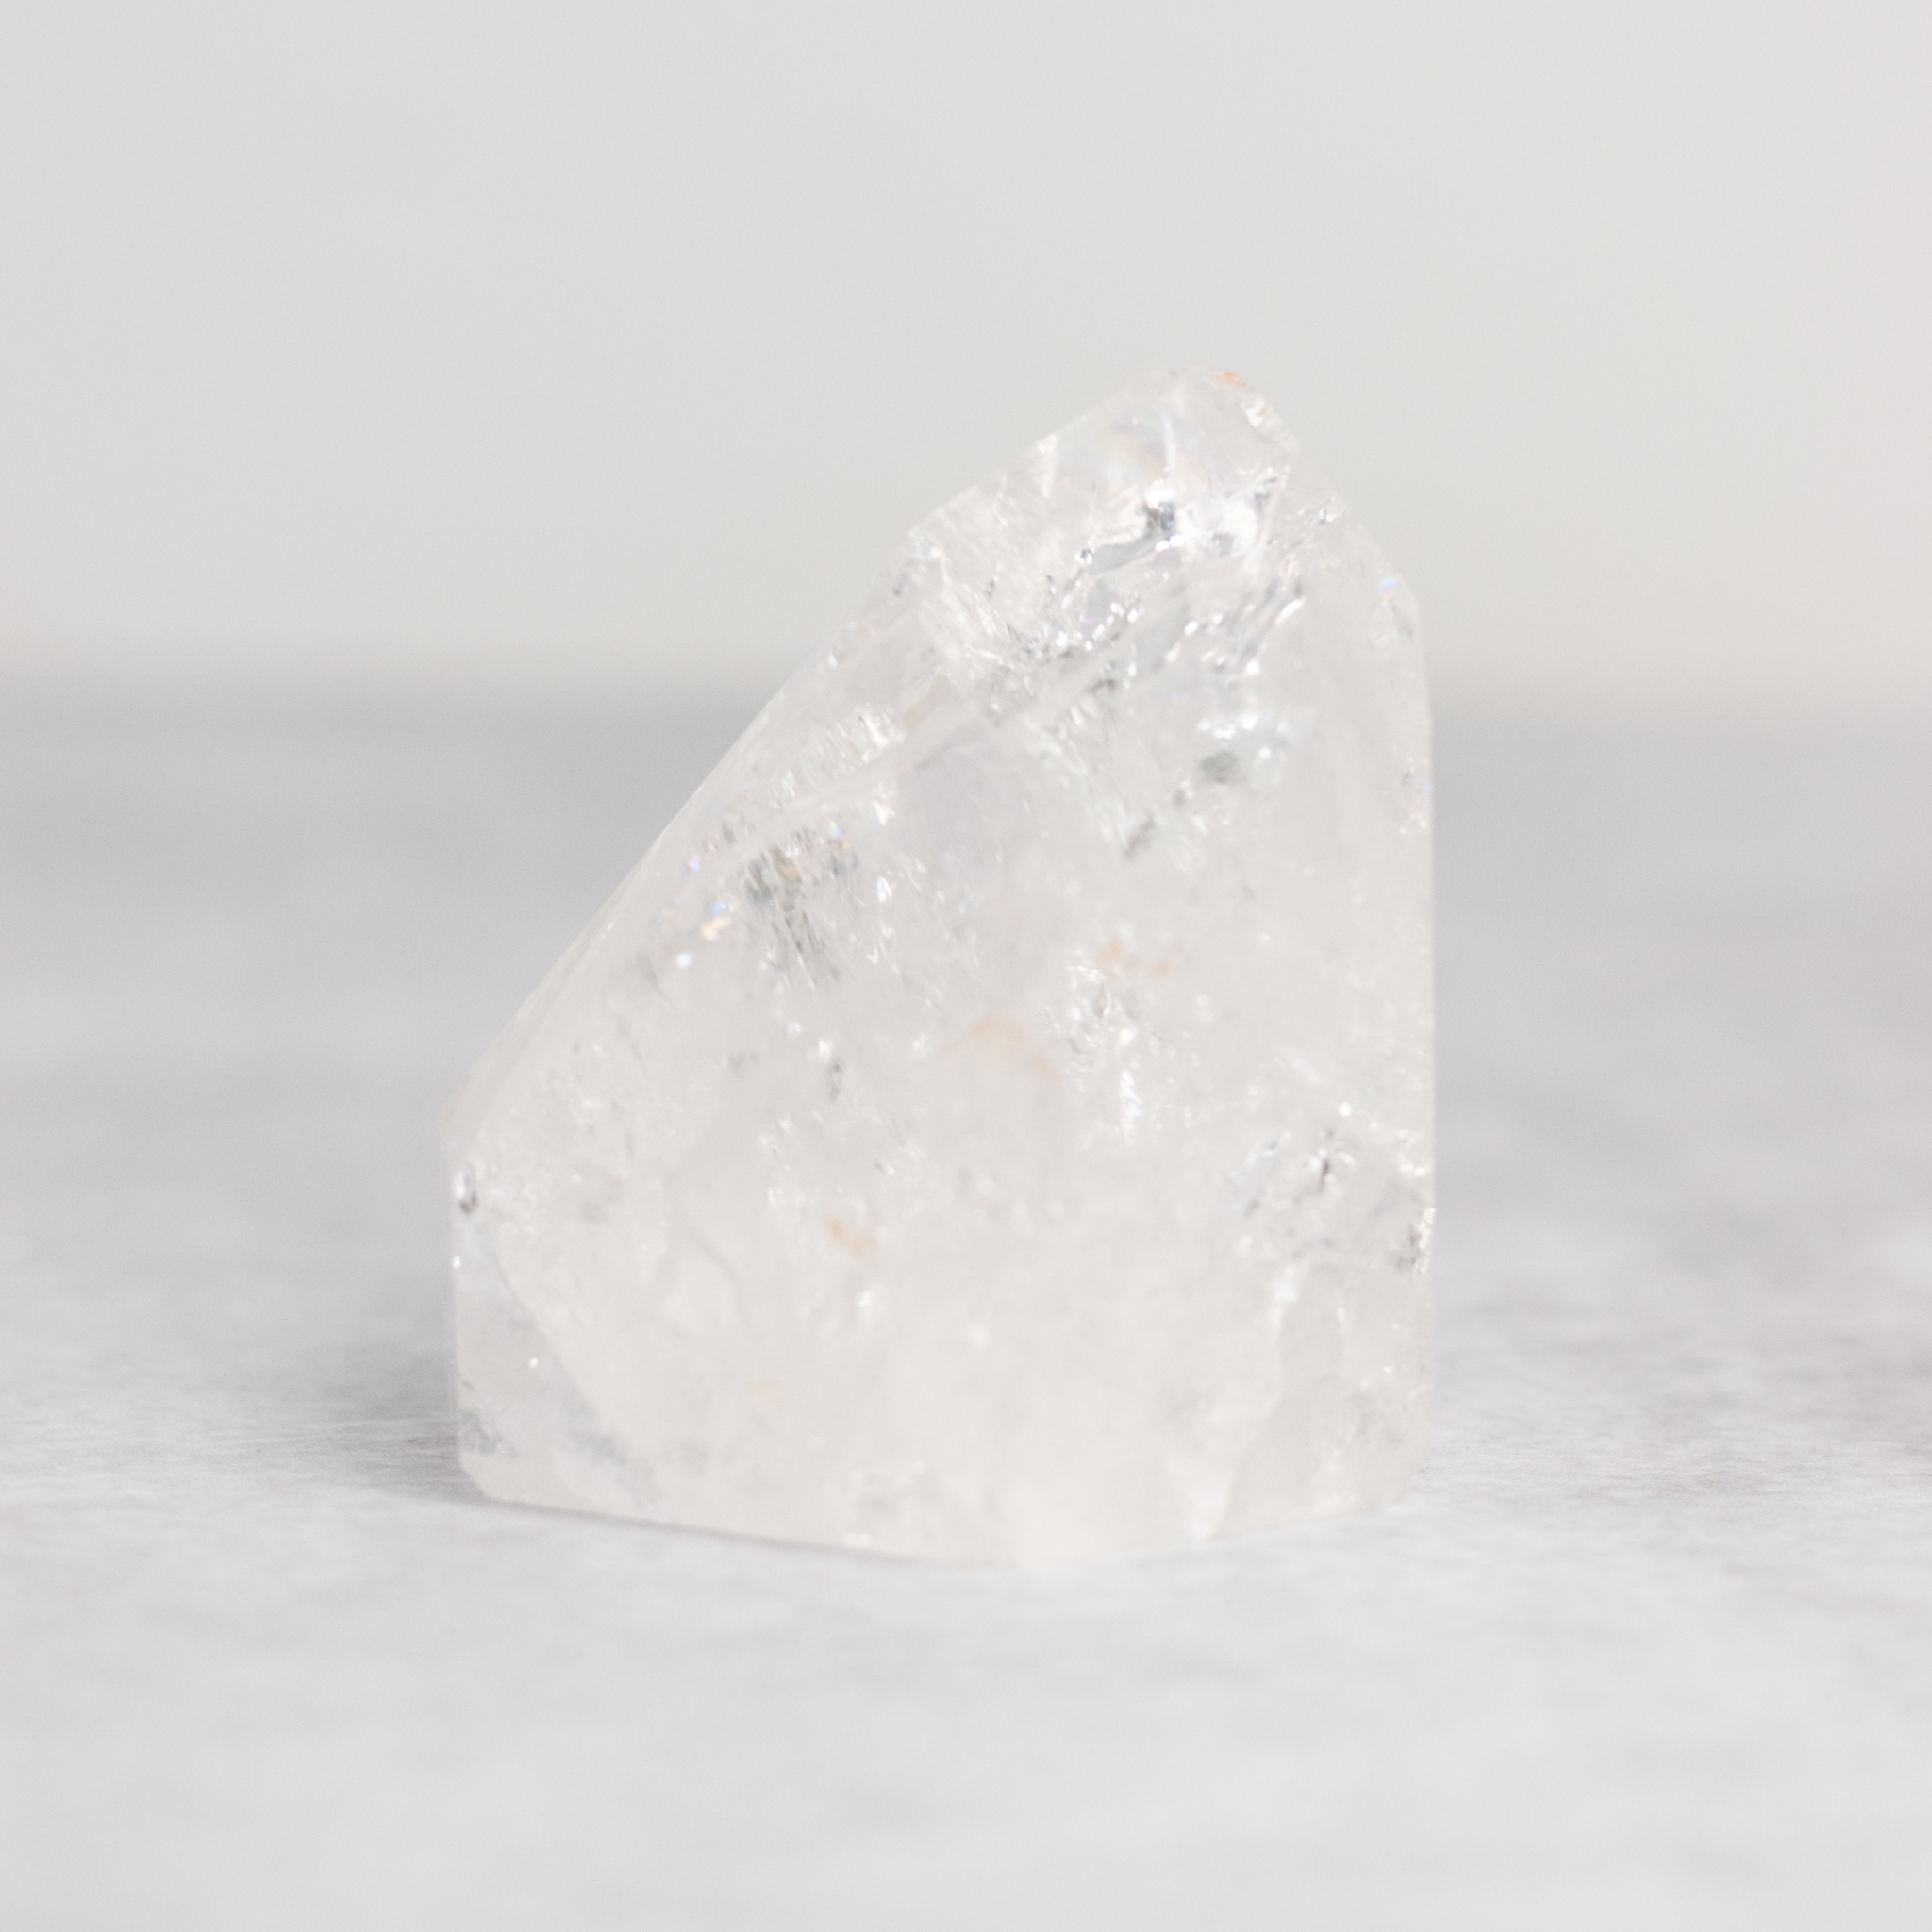 Hart met Bergkristal